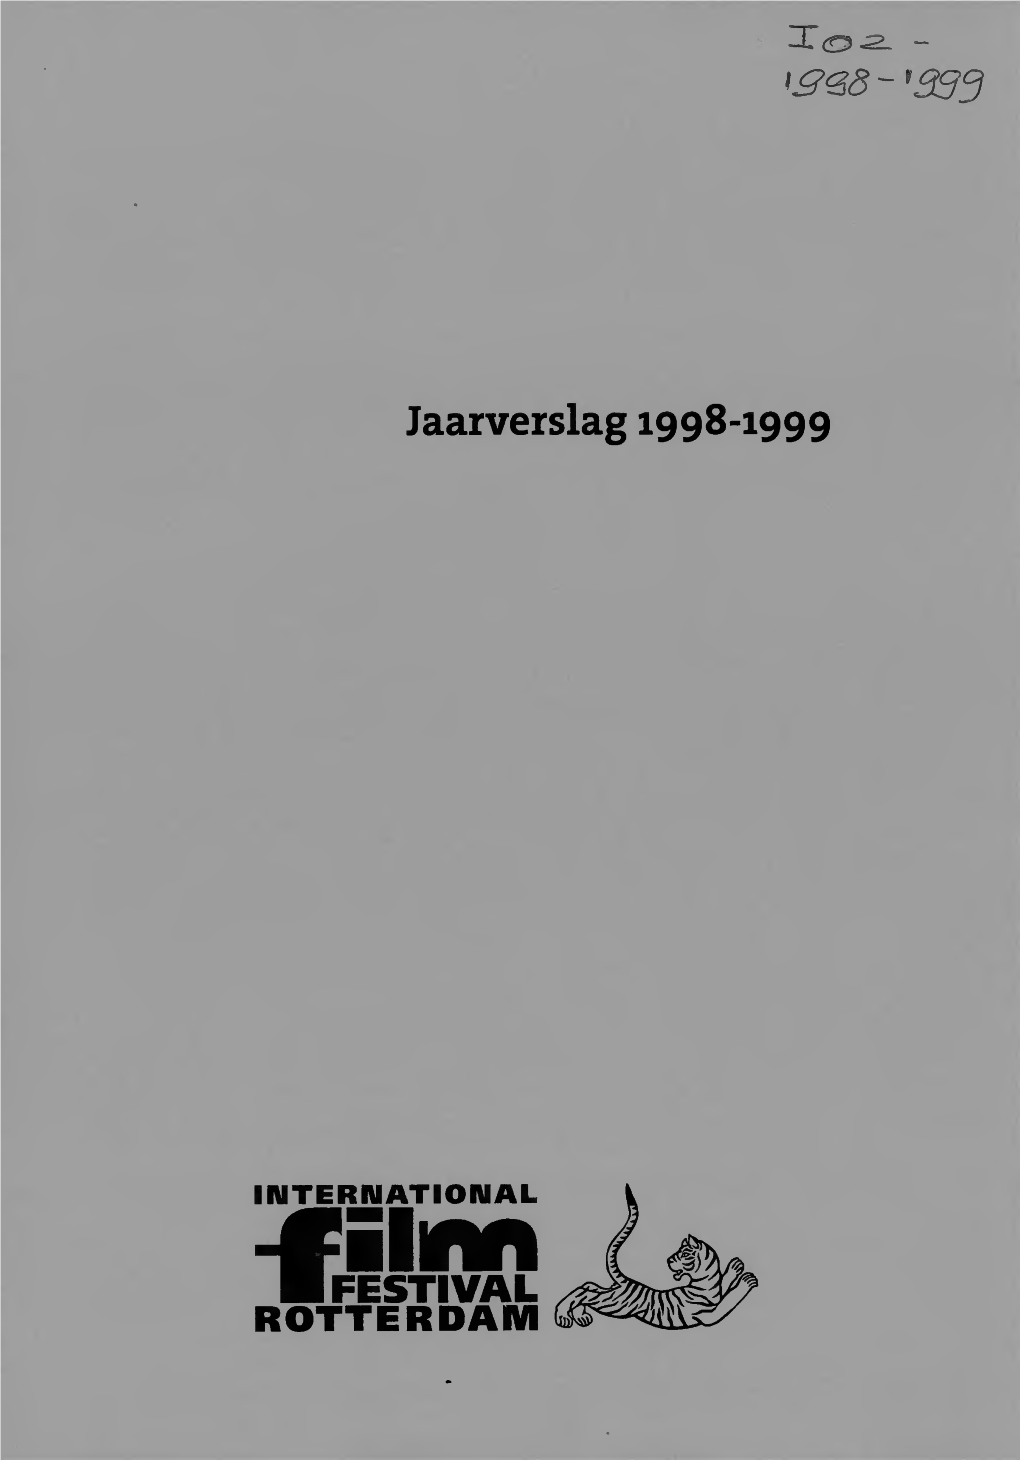 Jaarverslag 1998-1999